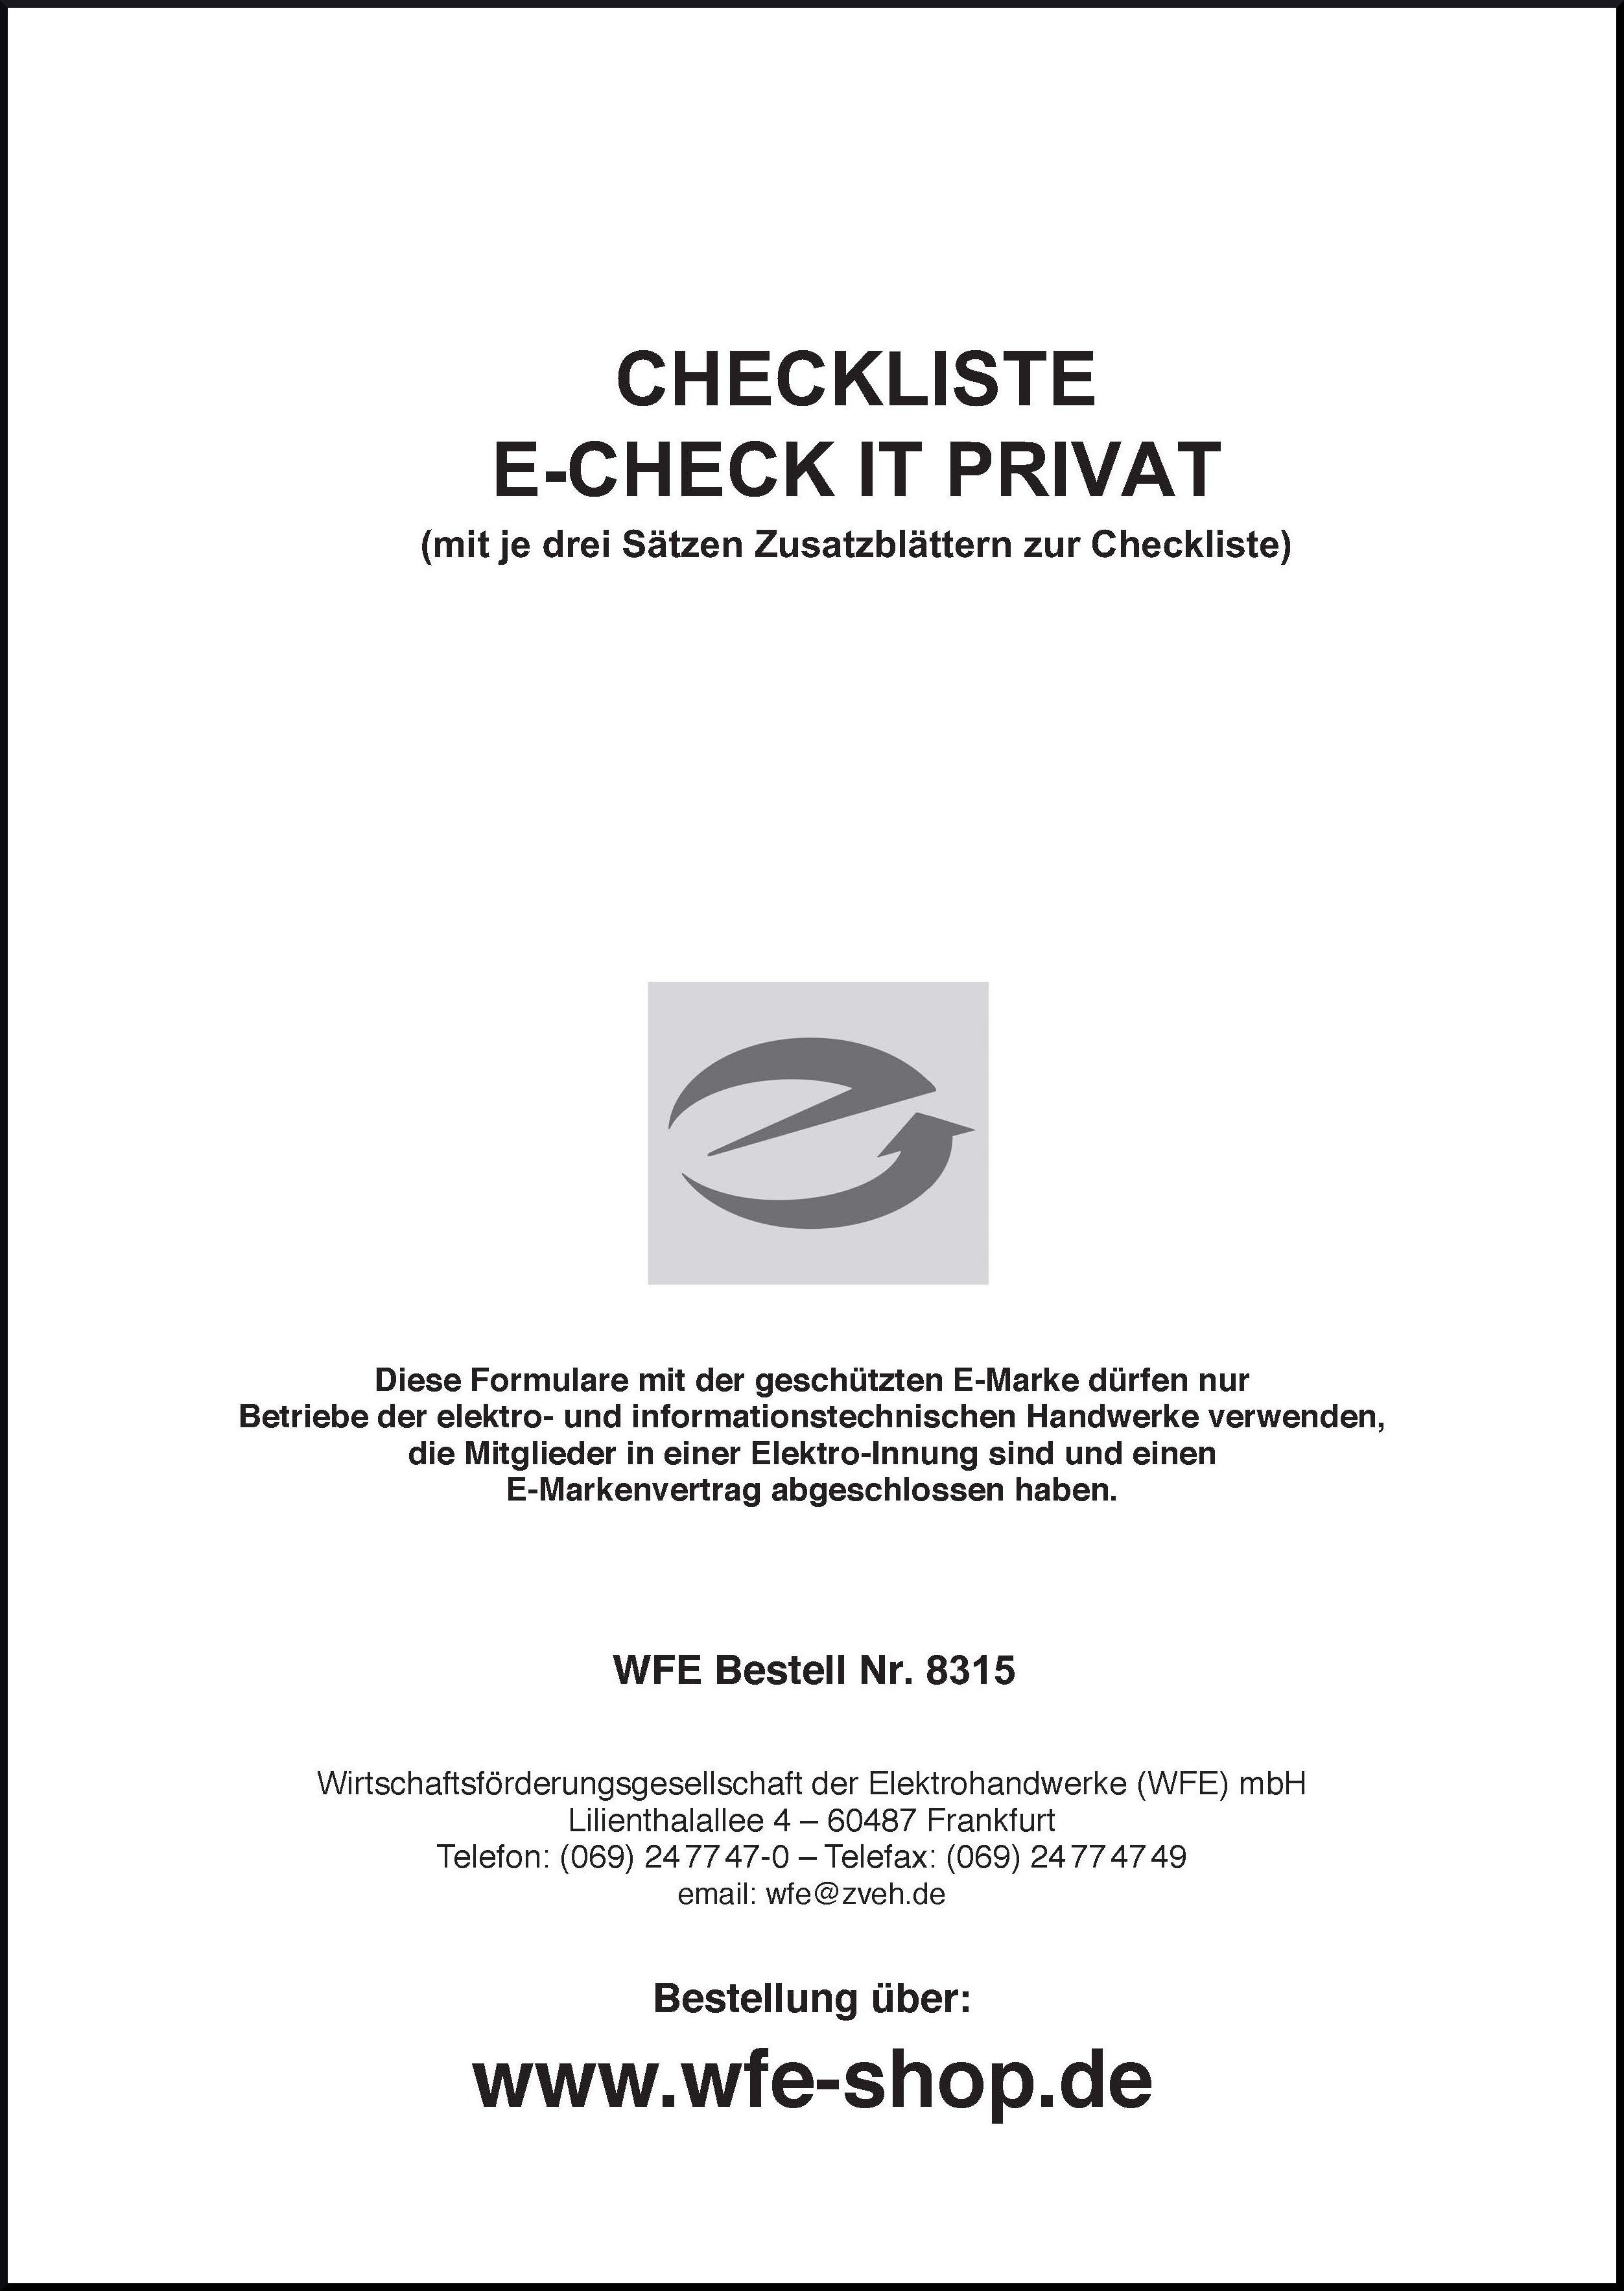 Checkliste E-CHECK IT PRIVAT mit E-Marke